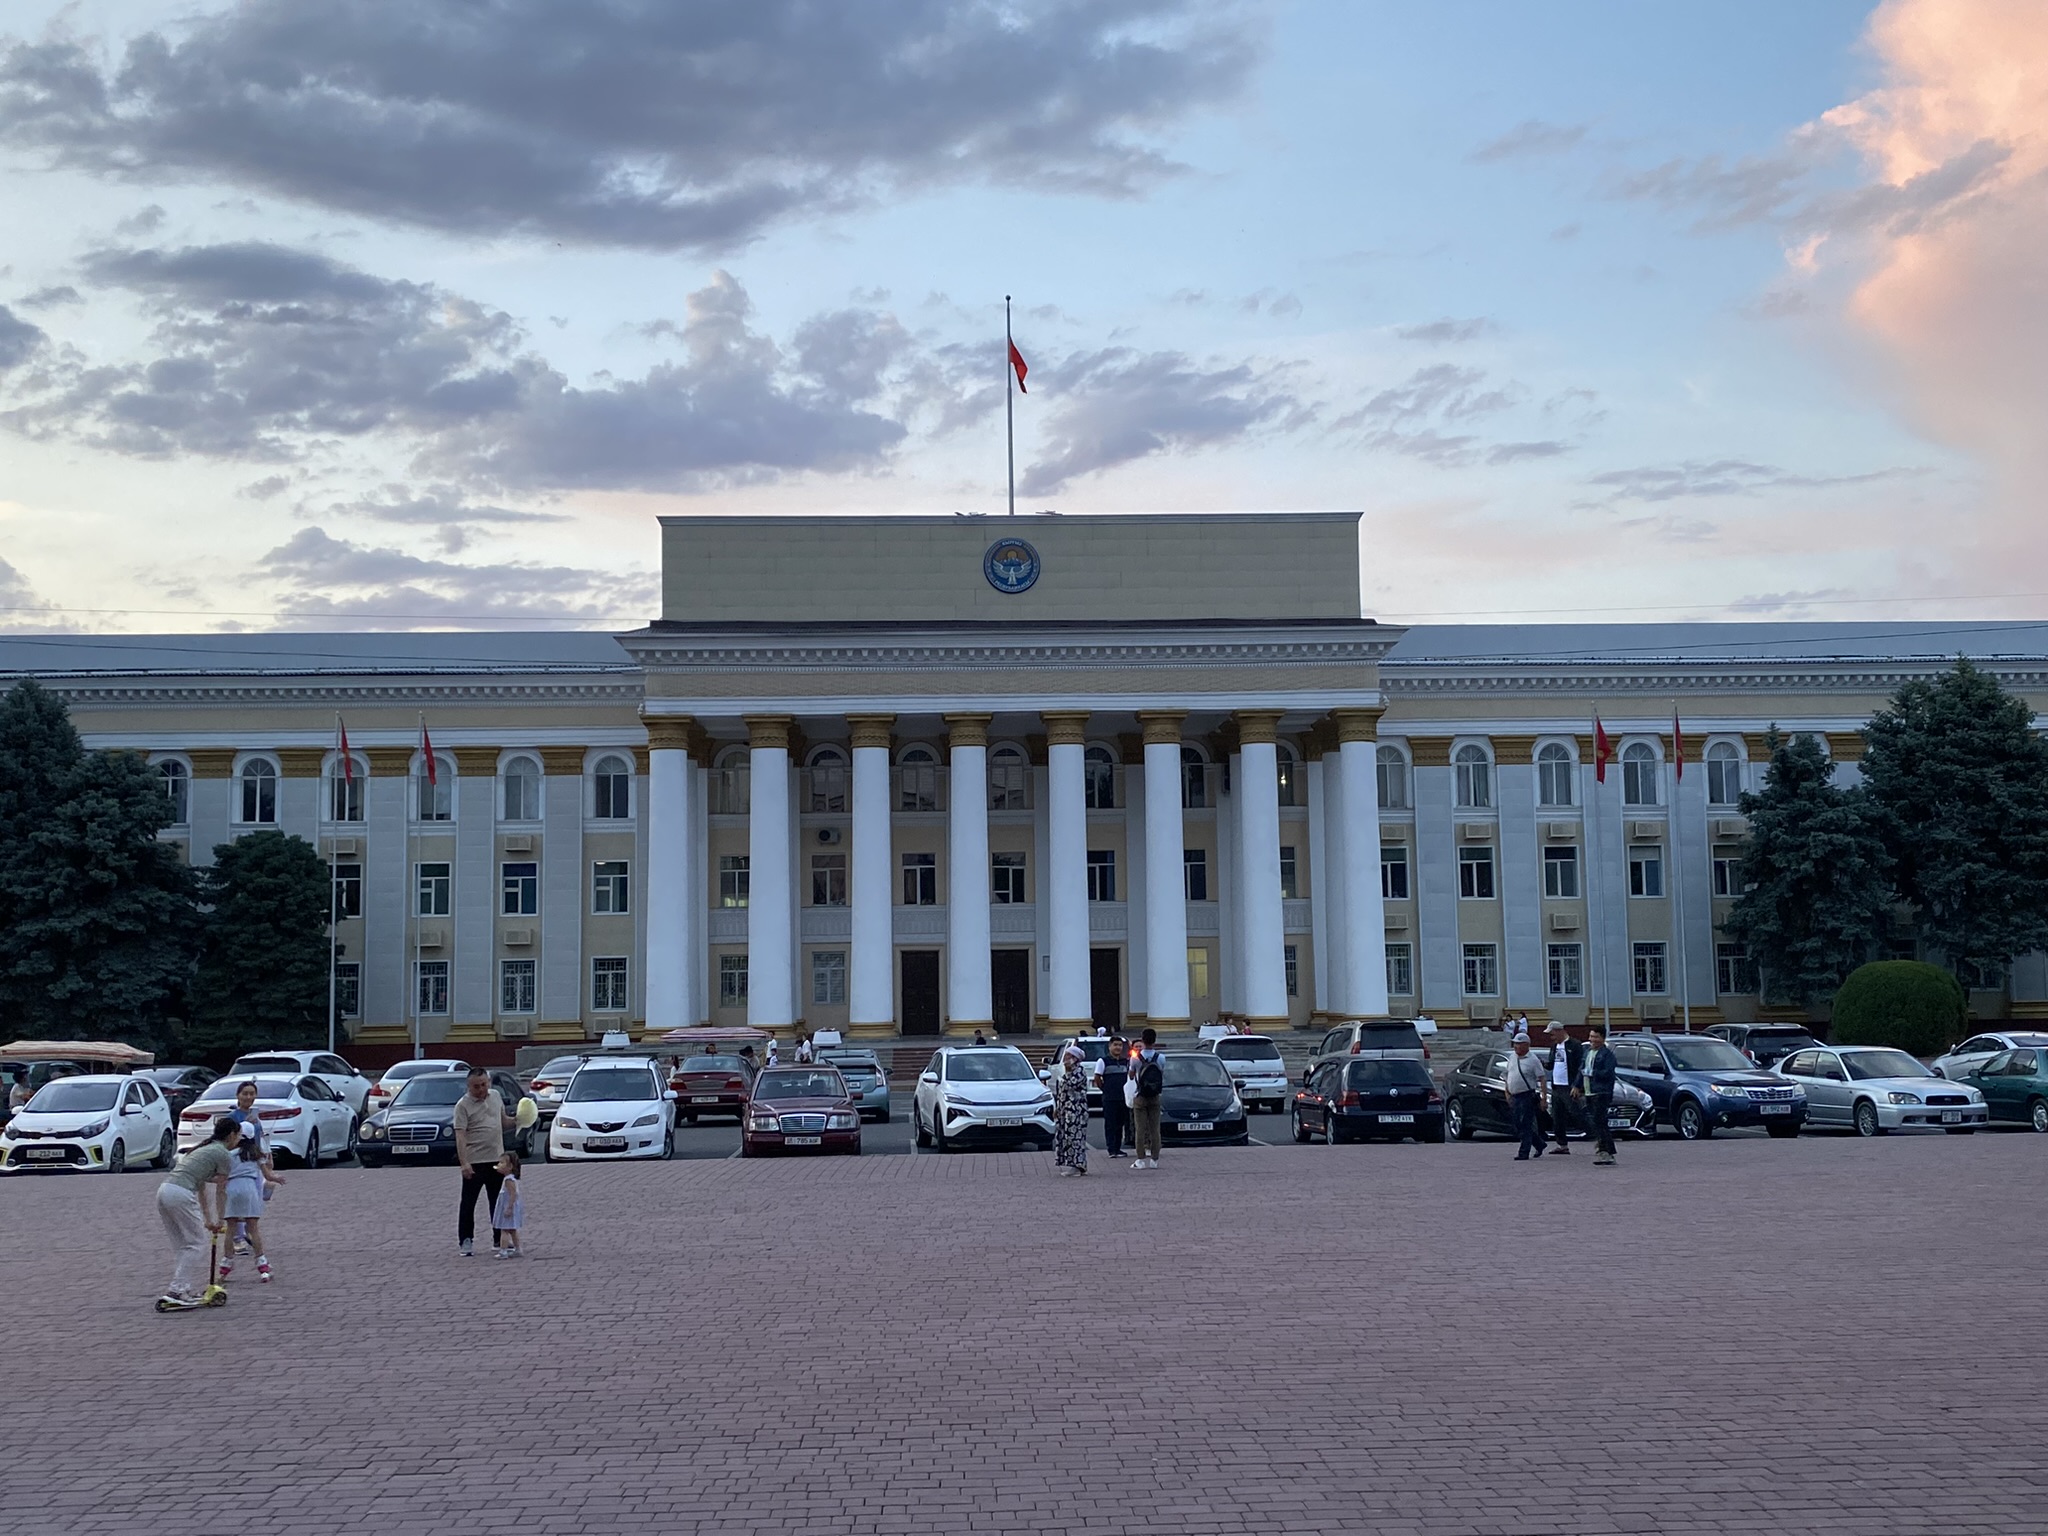 Biszkek